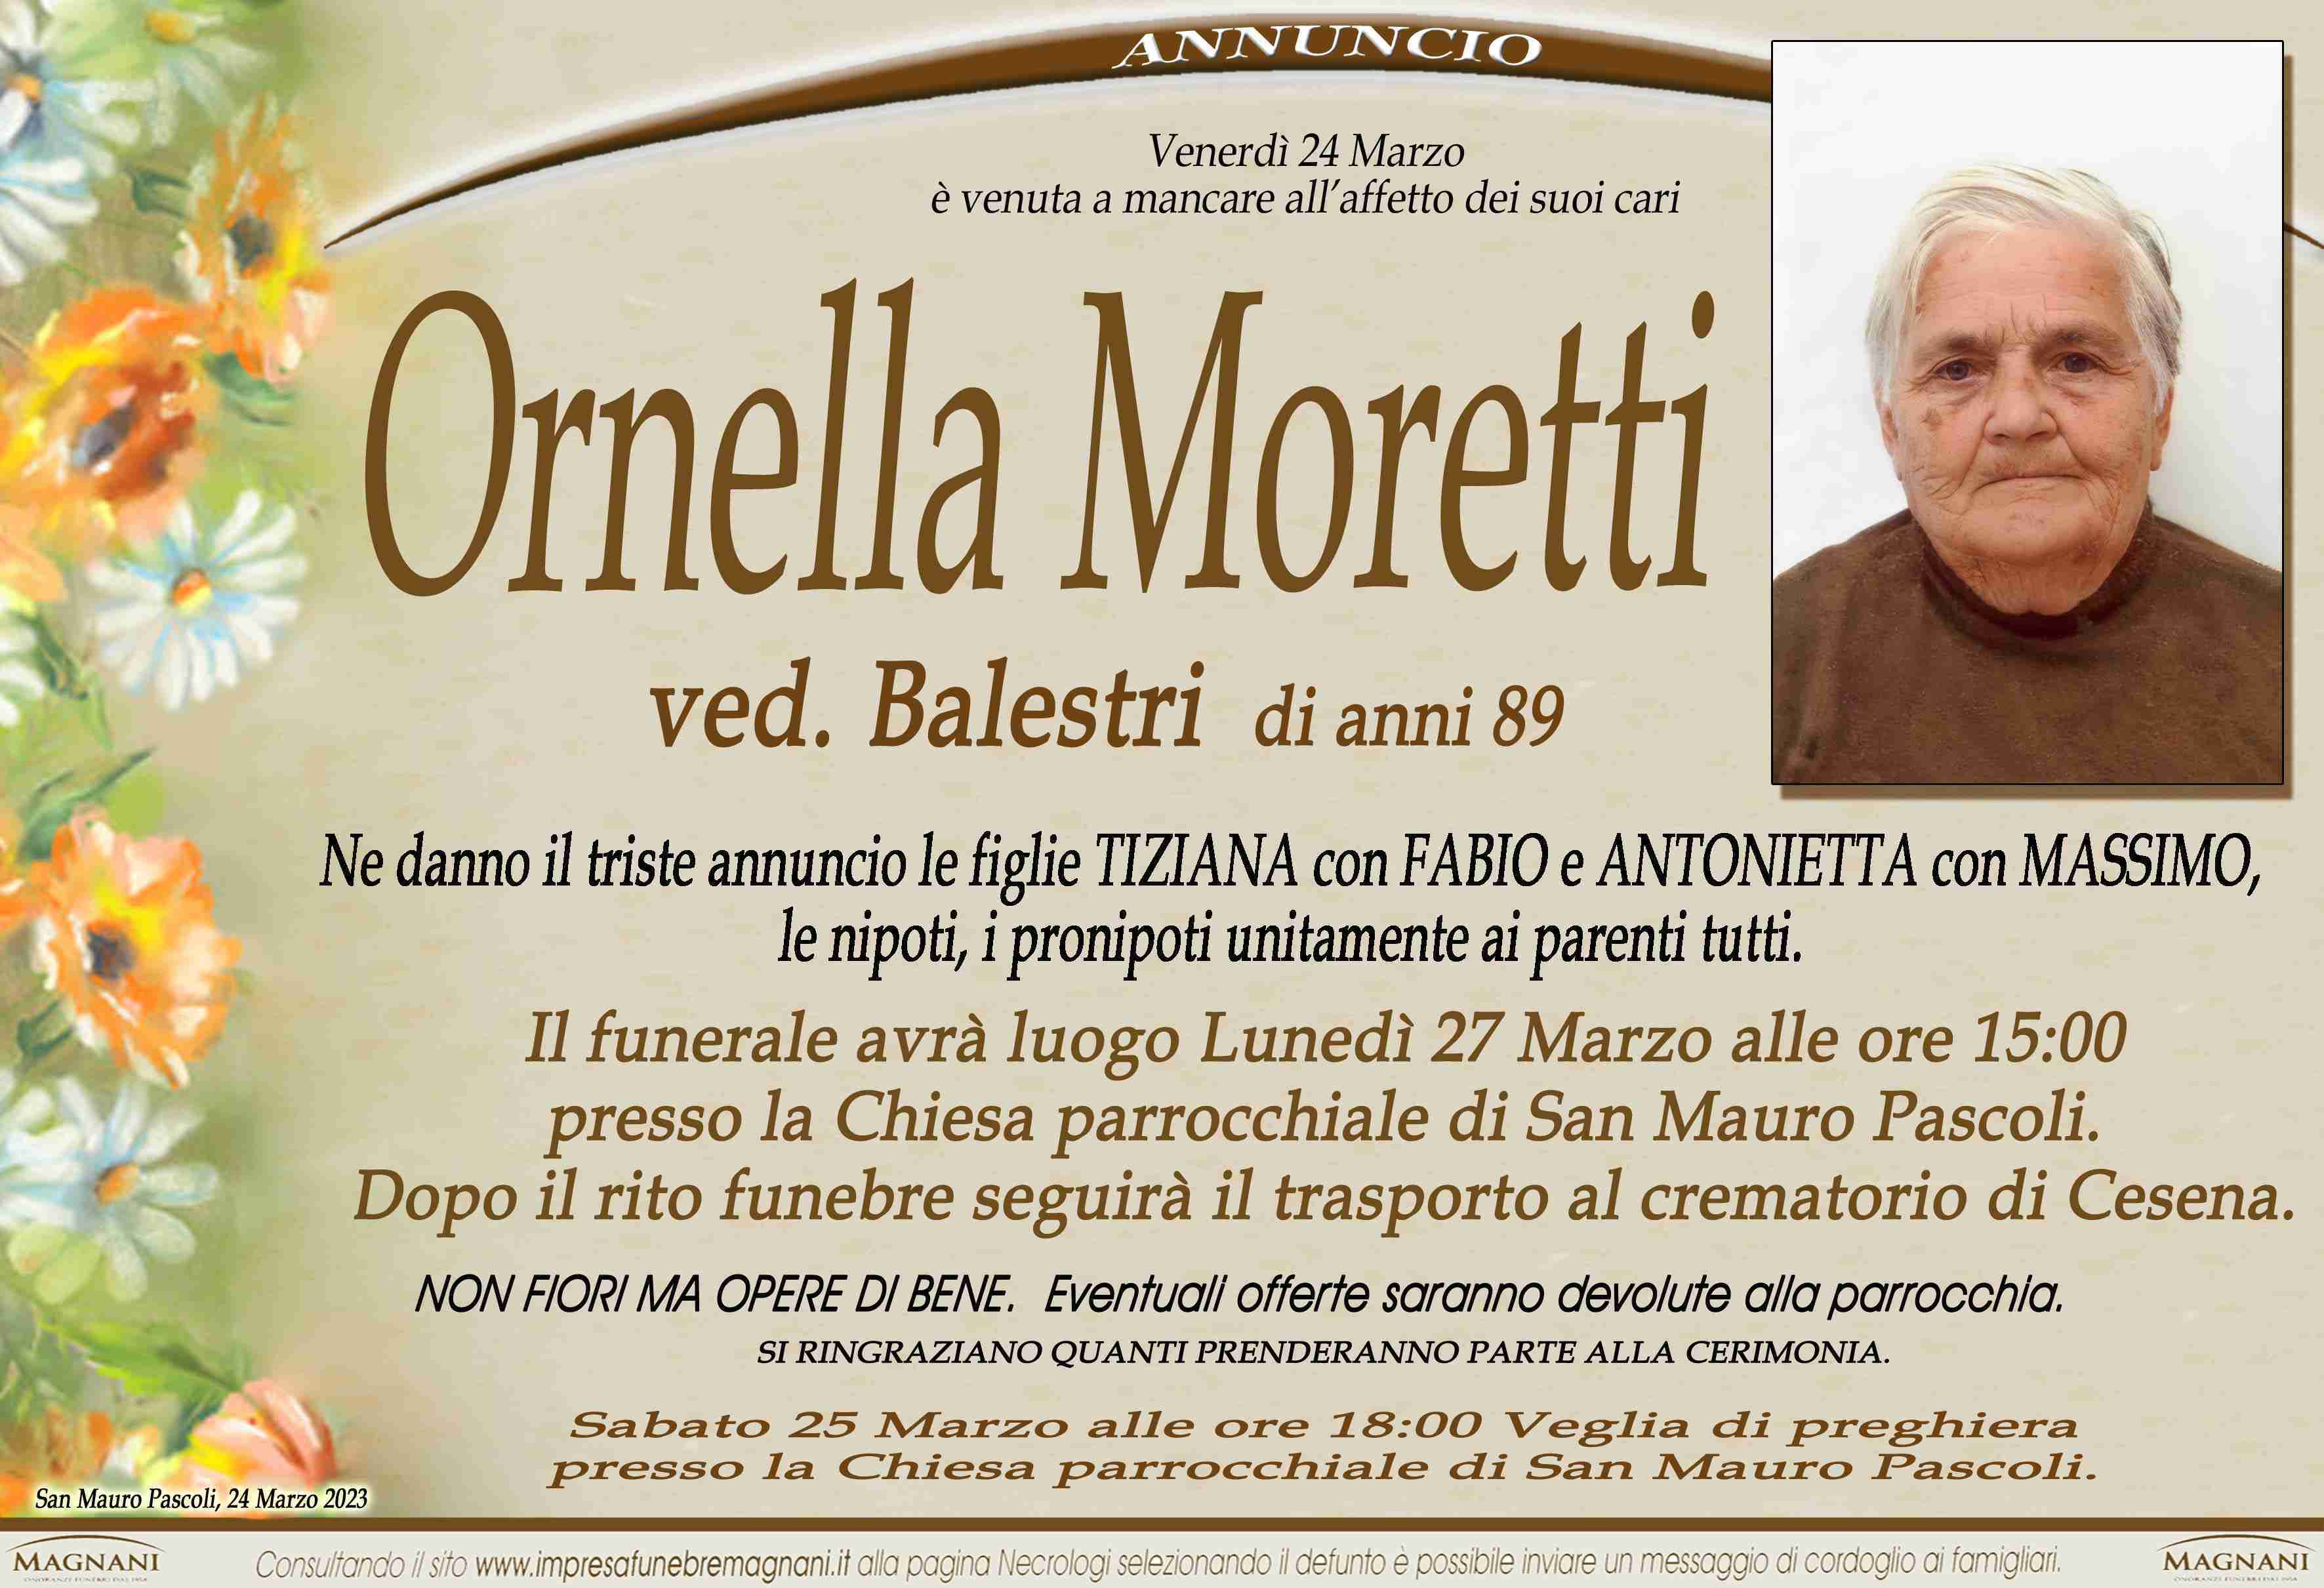 Ornella Moretti